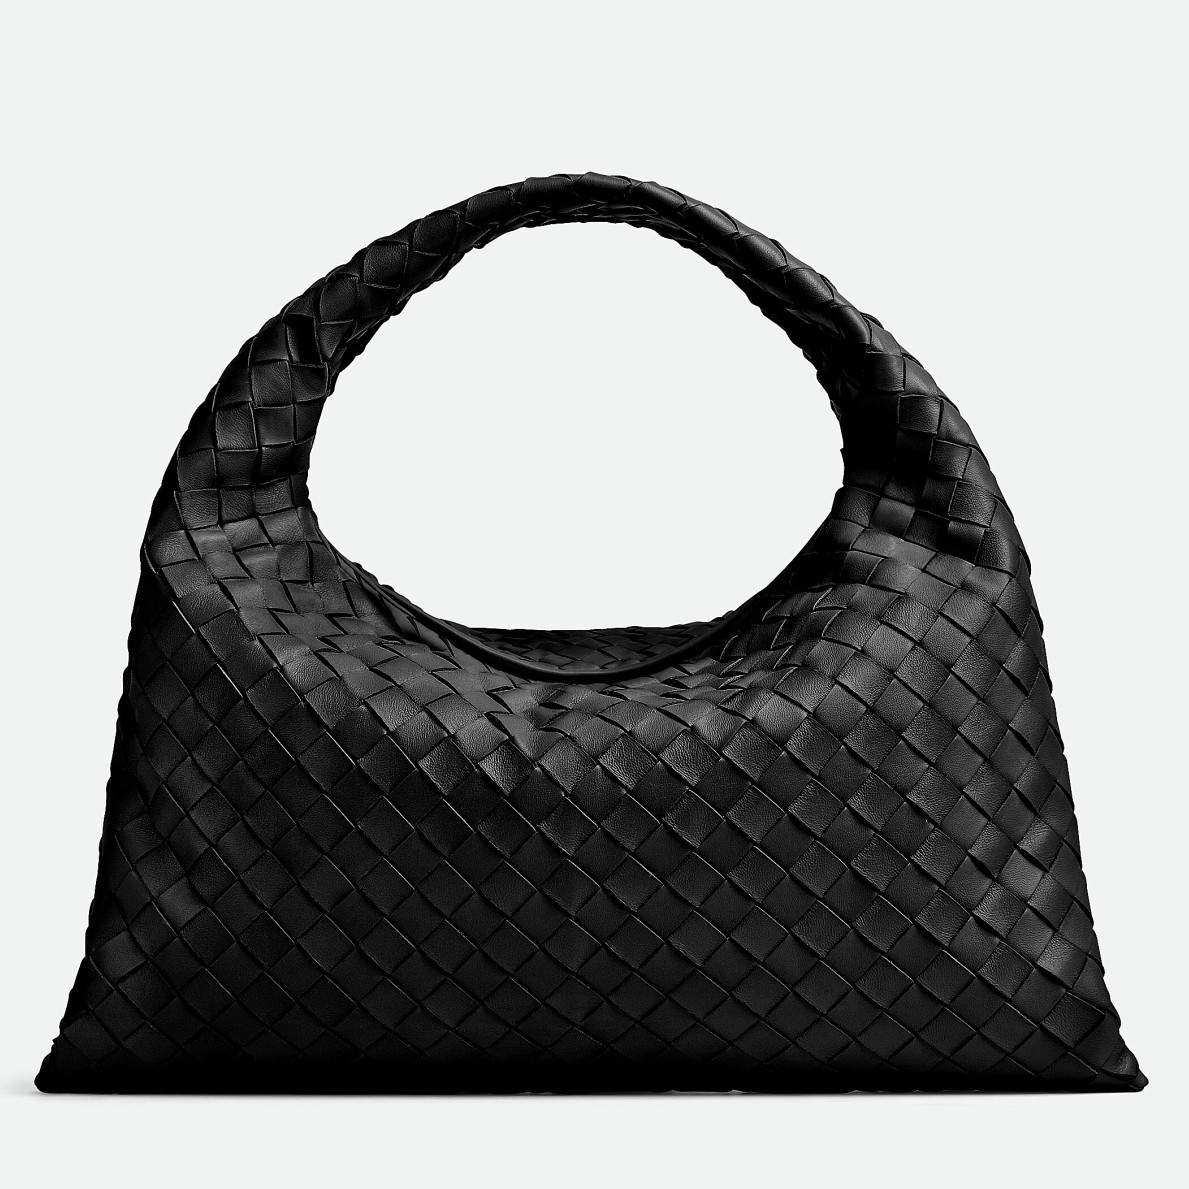 Bottega Veneta Small Hop Bag in Black Intrecciato Calfskin 997